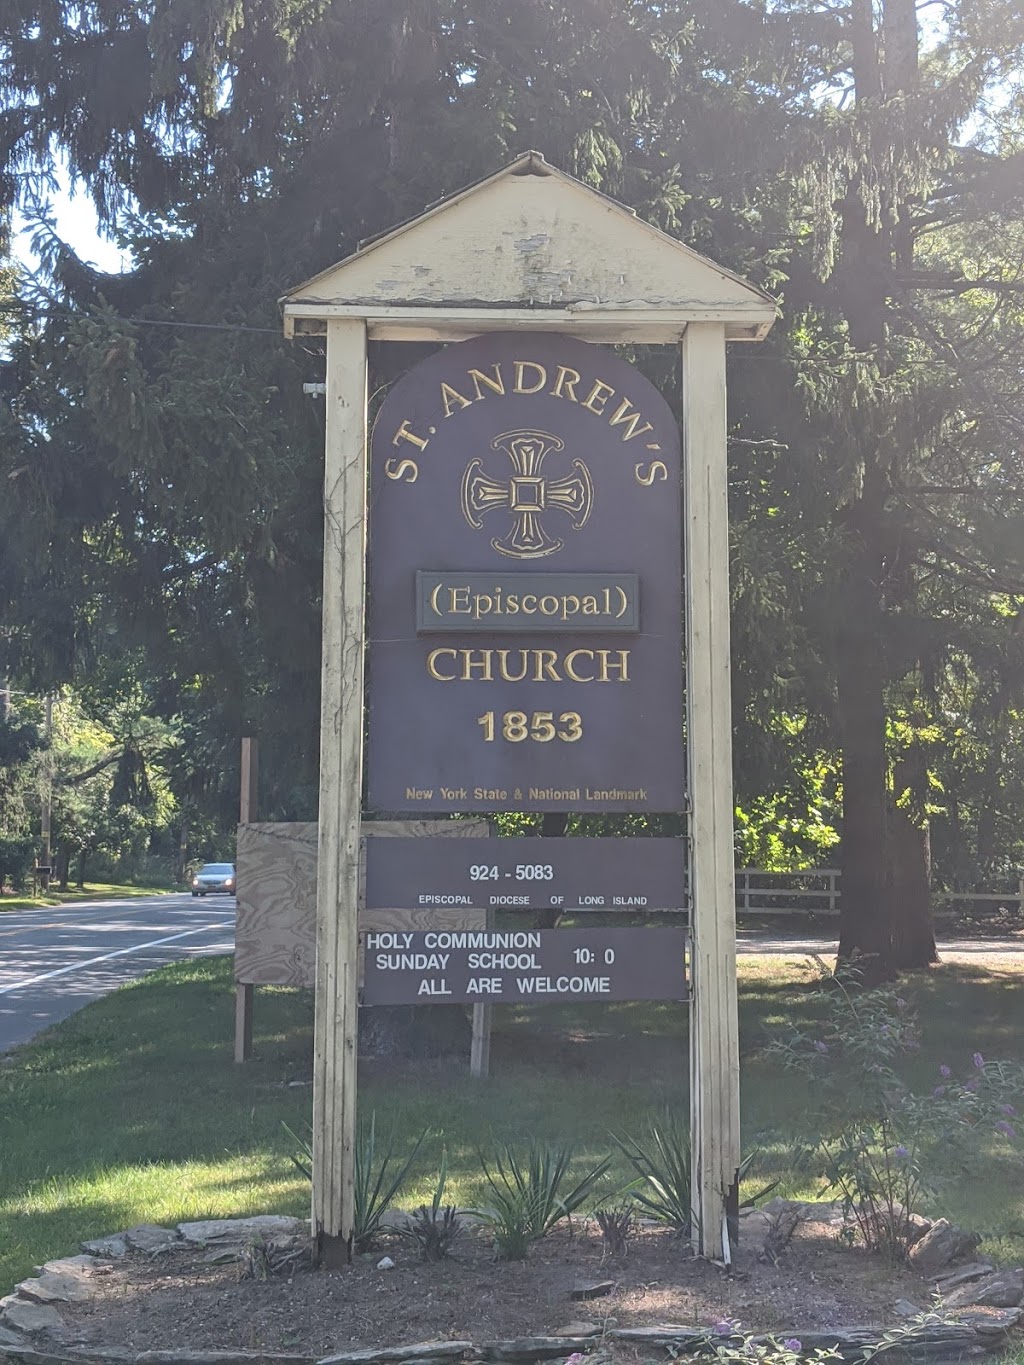 St Andrew Episcopal Church | 244 E Main St, Yaphank, NY 11980 | Phone: (631) 924-5083